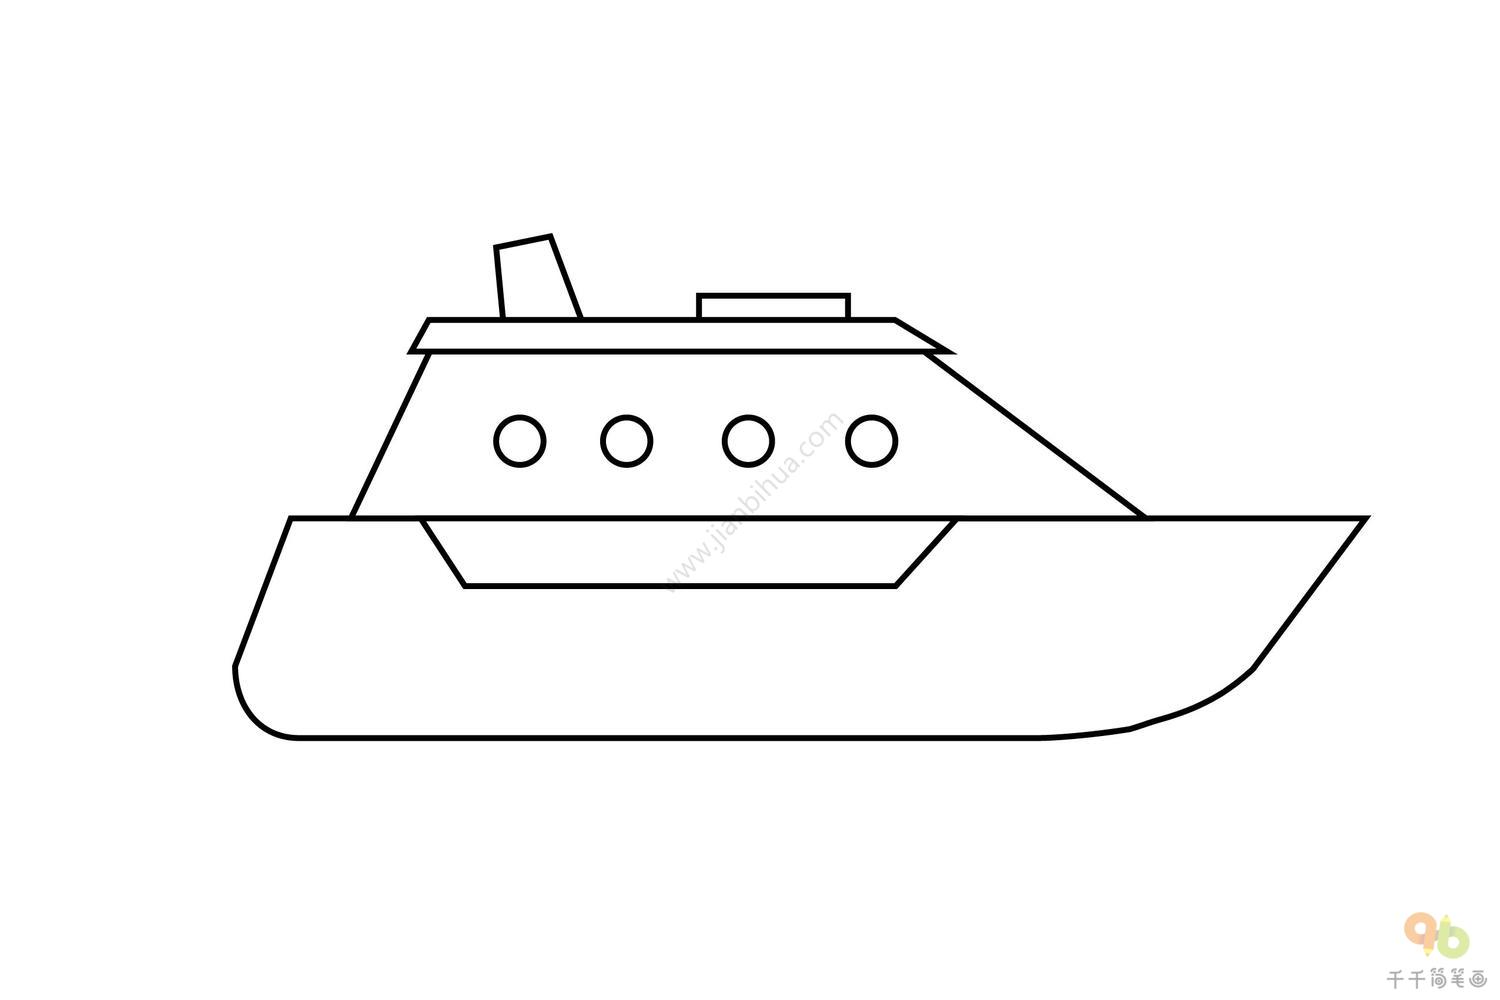 【海洋船舶】快艇3D设计图纸 小船模型设计 step格式_船舶_海洋-仿真秀干货文章